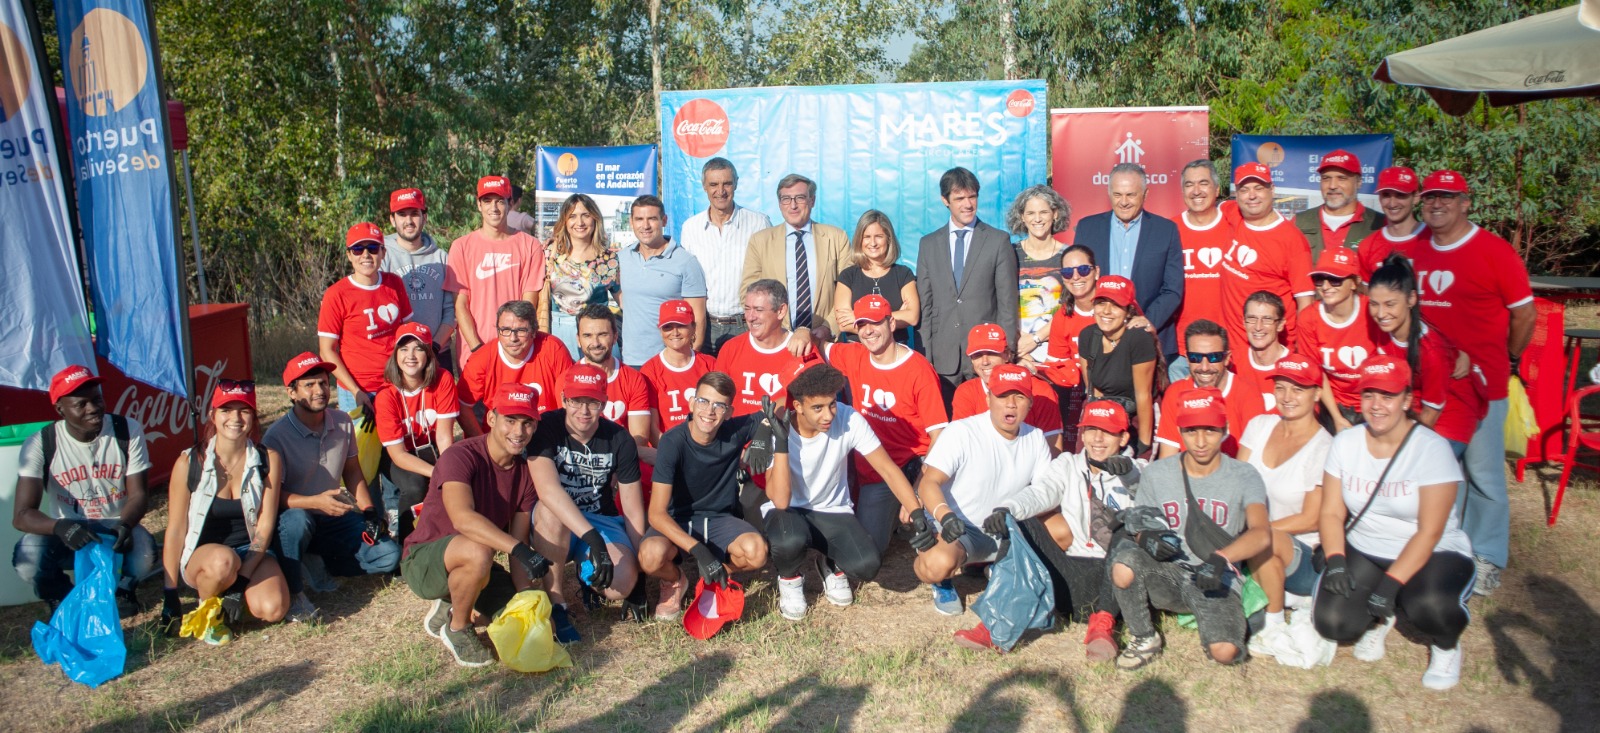 La campaña Mares Circulares, donde participó la Fundación Sevilla FC